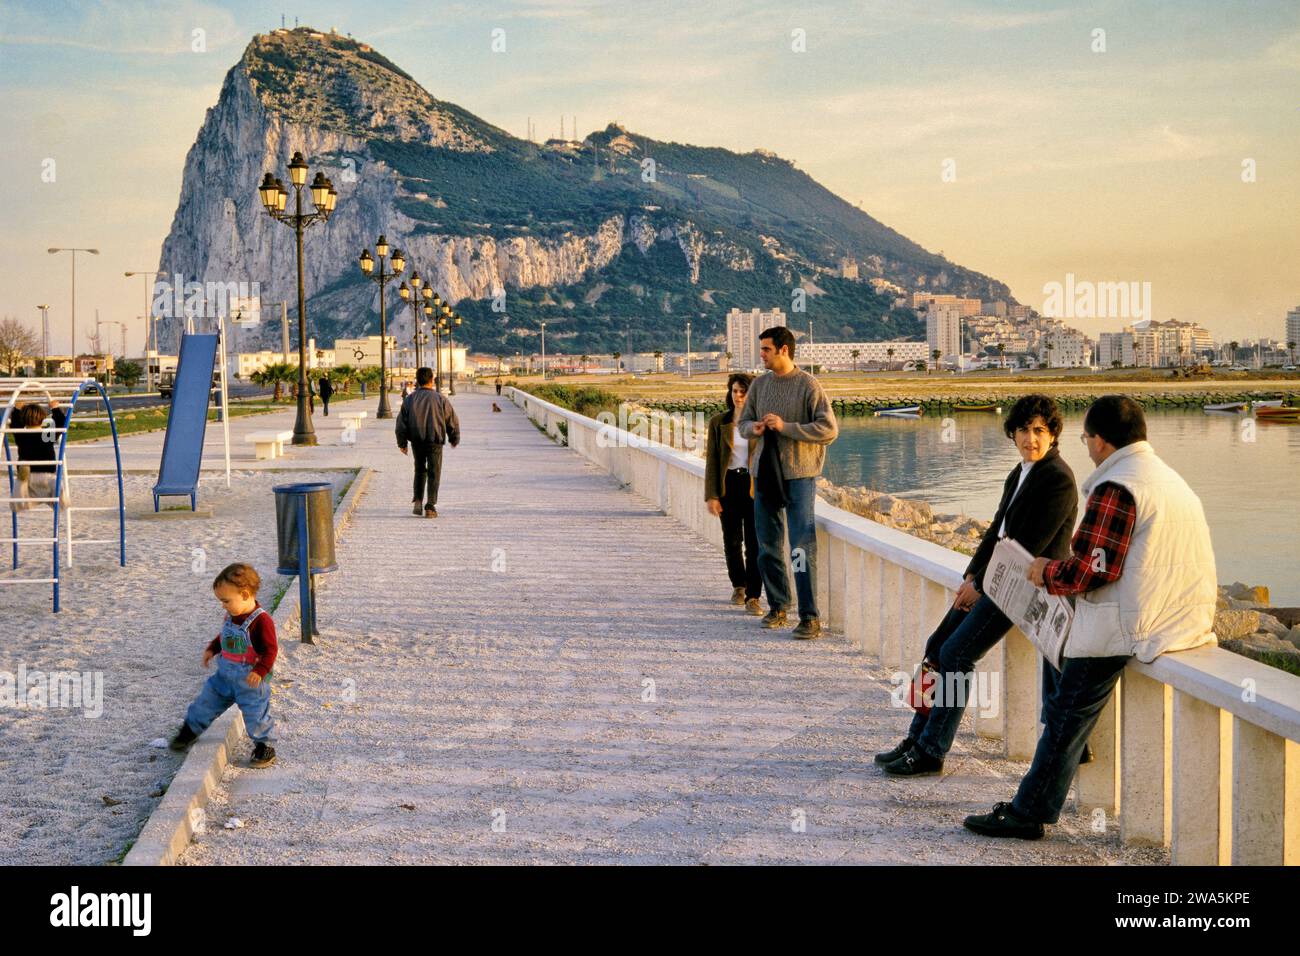 Local people at Avenida de España in La Linea de la Concepcion, Costa del Sol, at Bay of Algeciras, The Rock of Gibraltar in distance, Andalusia Spain Stock Photo